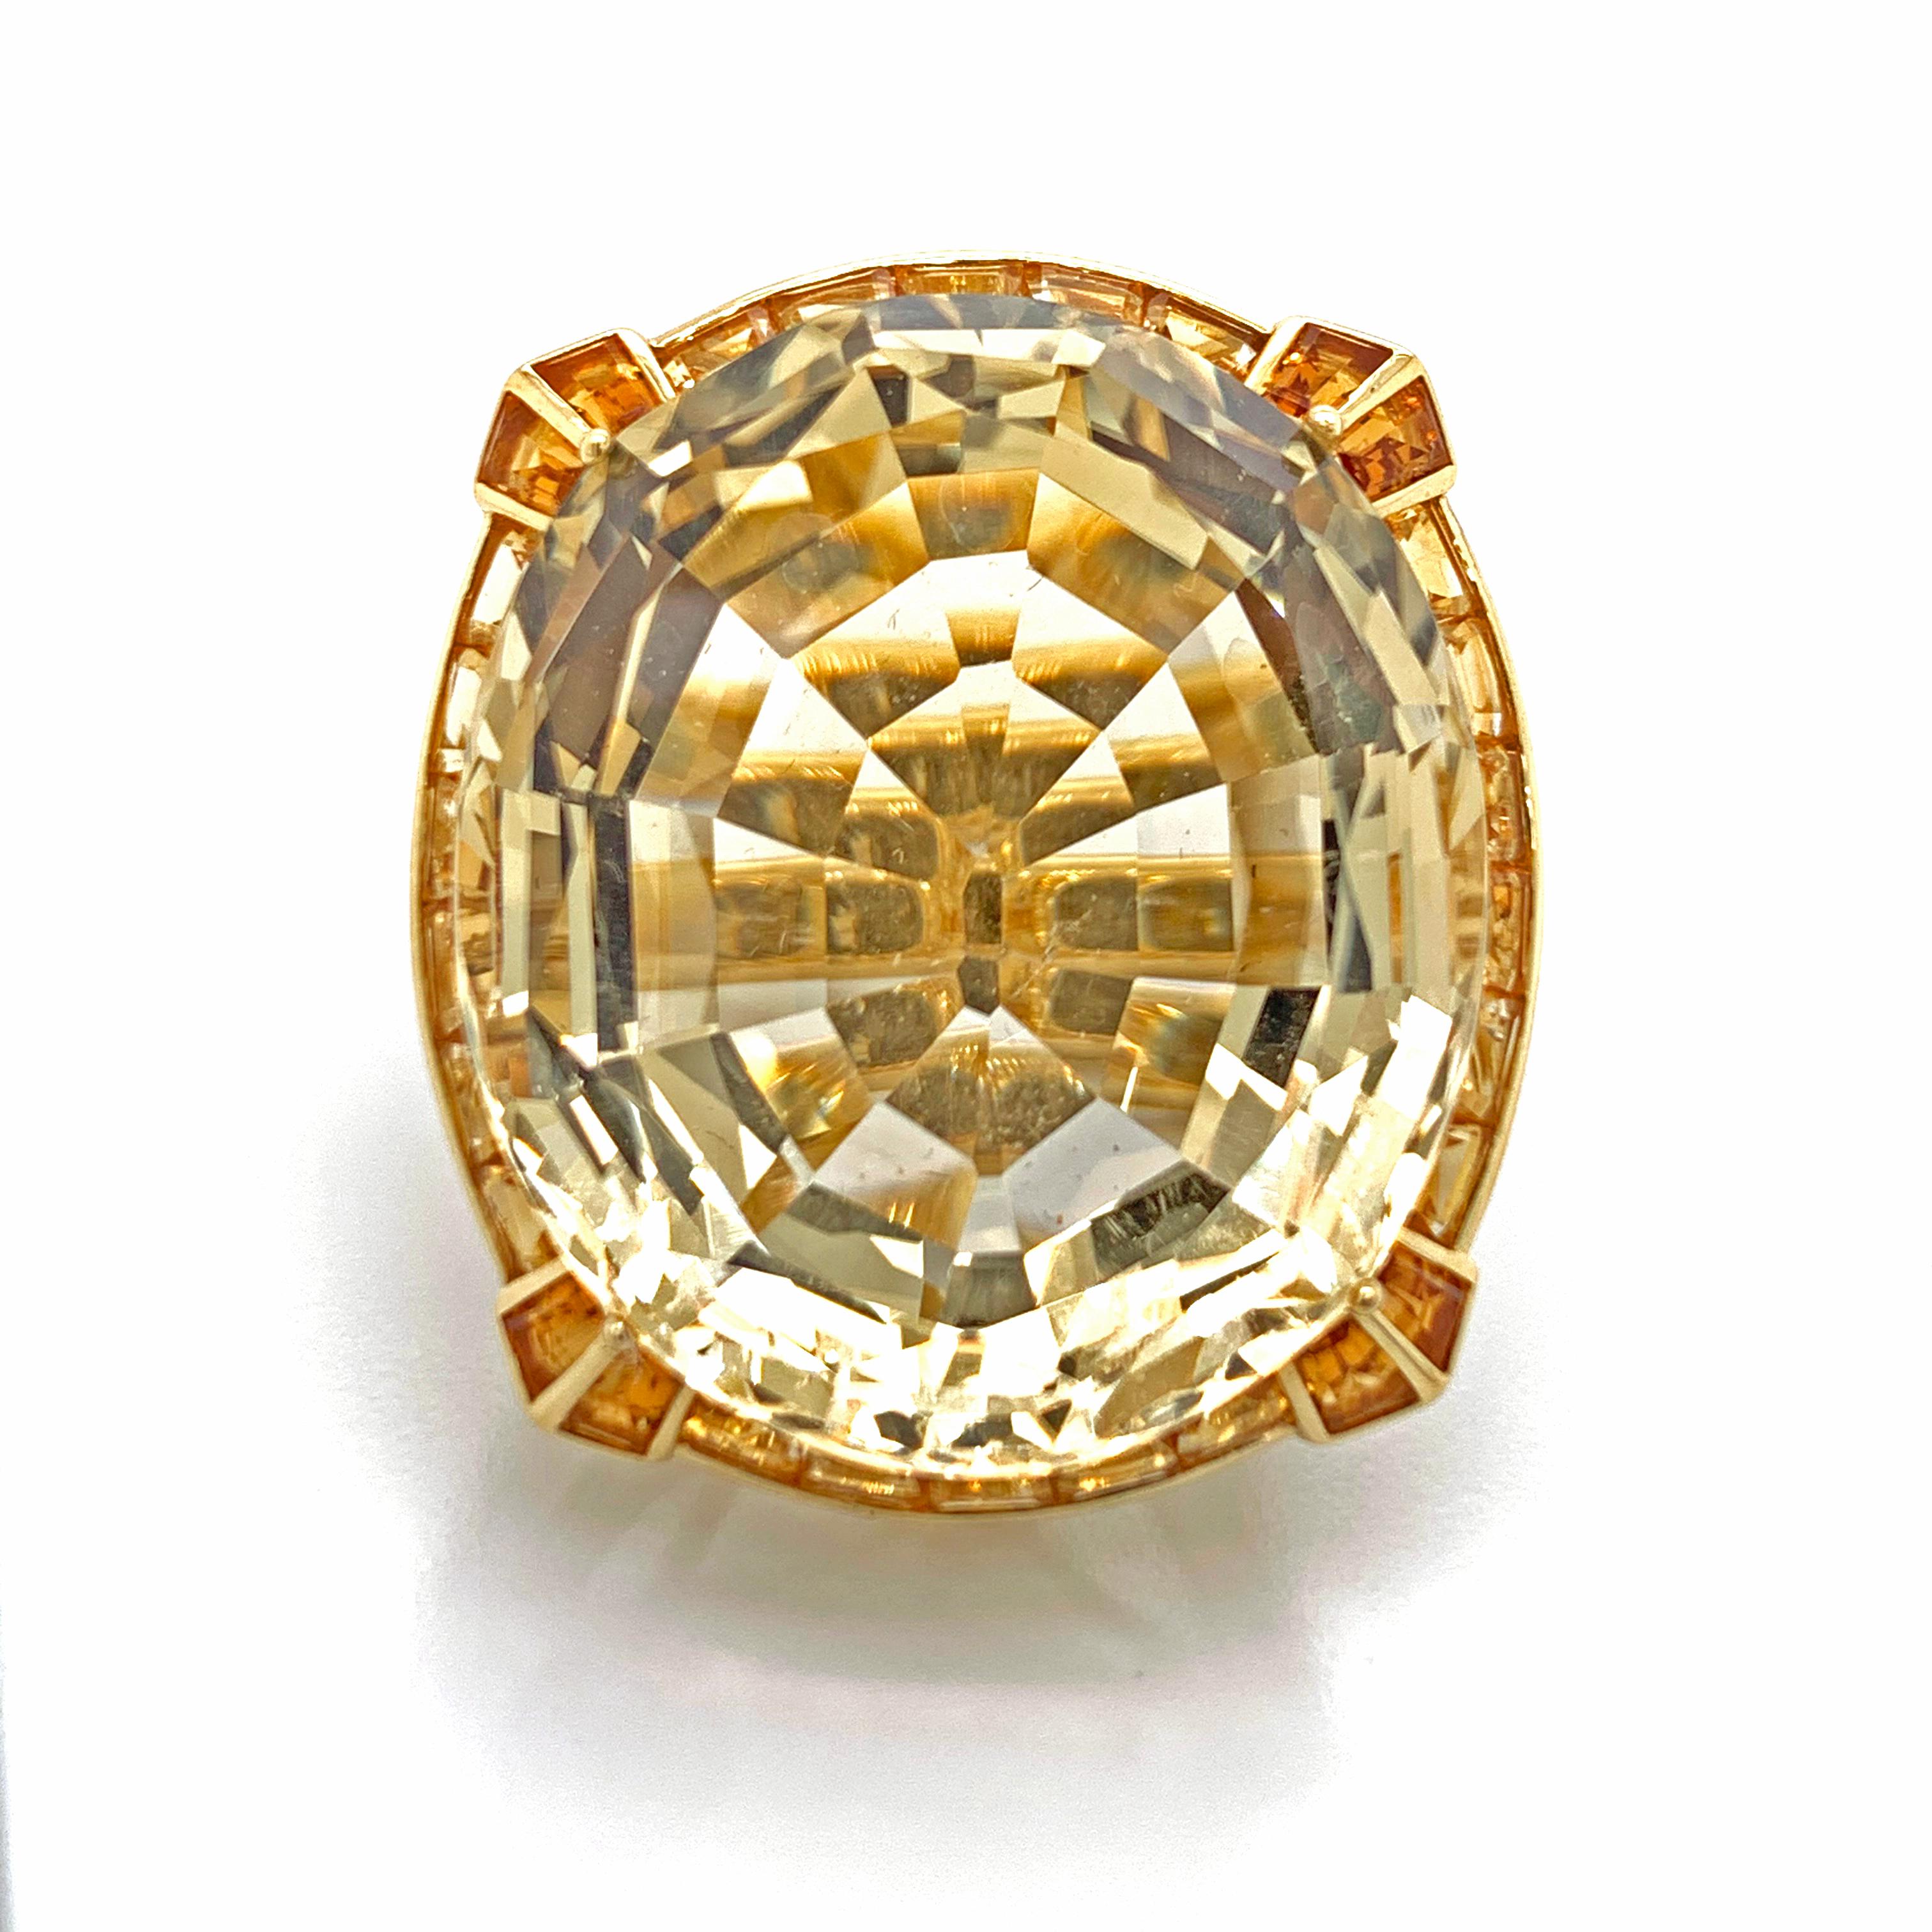 Ein schöner Ring aus 18kt Gelbgold. Mit einem schönen Citrin Mittelstein und mit runden kleinen Diamanten rund um die Montage des Ringes gehen. Der Ring ist außerdem mit Zitrinen besetzt, die an der Seite des Rings liegen und den Mittelstein